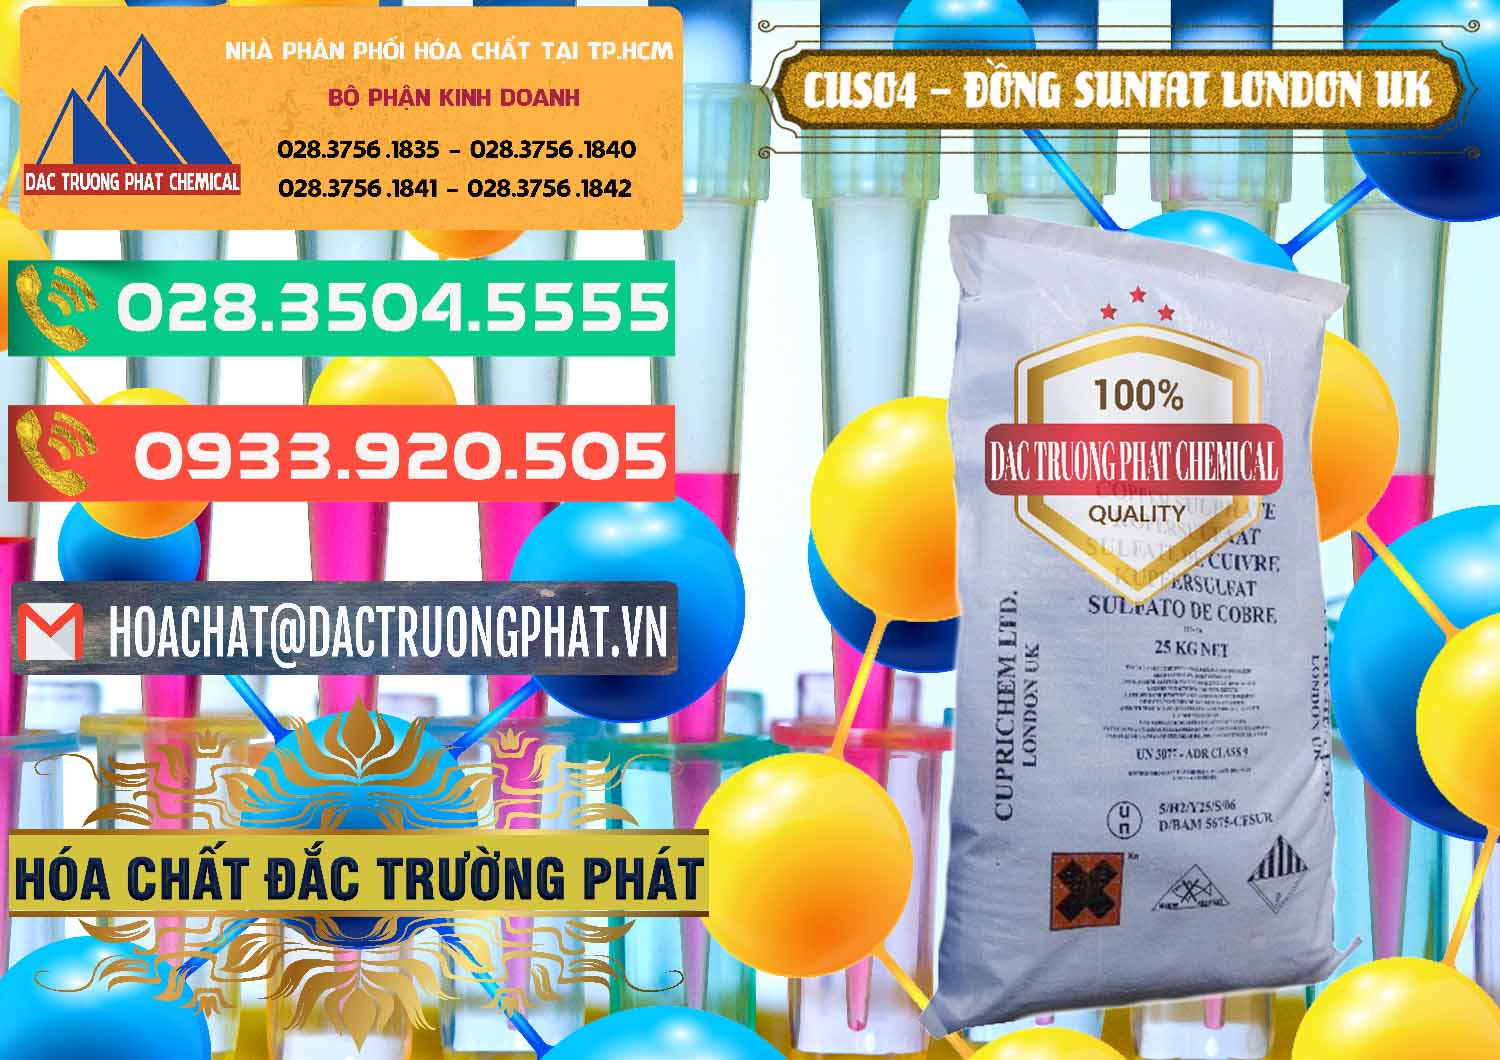 Cty chuyên bán - phân phối CuSO4 – Đồng Sunfat Anh Uk Kingdoms - 0478 - Nơi cung cấp _ nhập khẩu hóa chất tại TP.HCM - congtyhoachat.com.vn